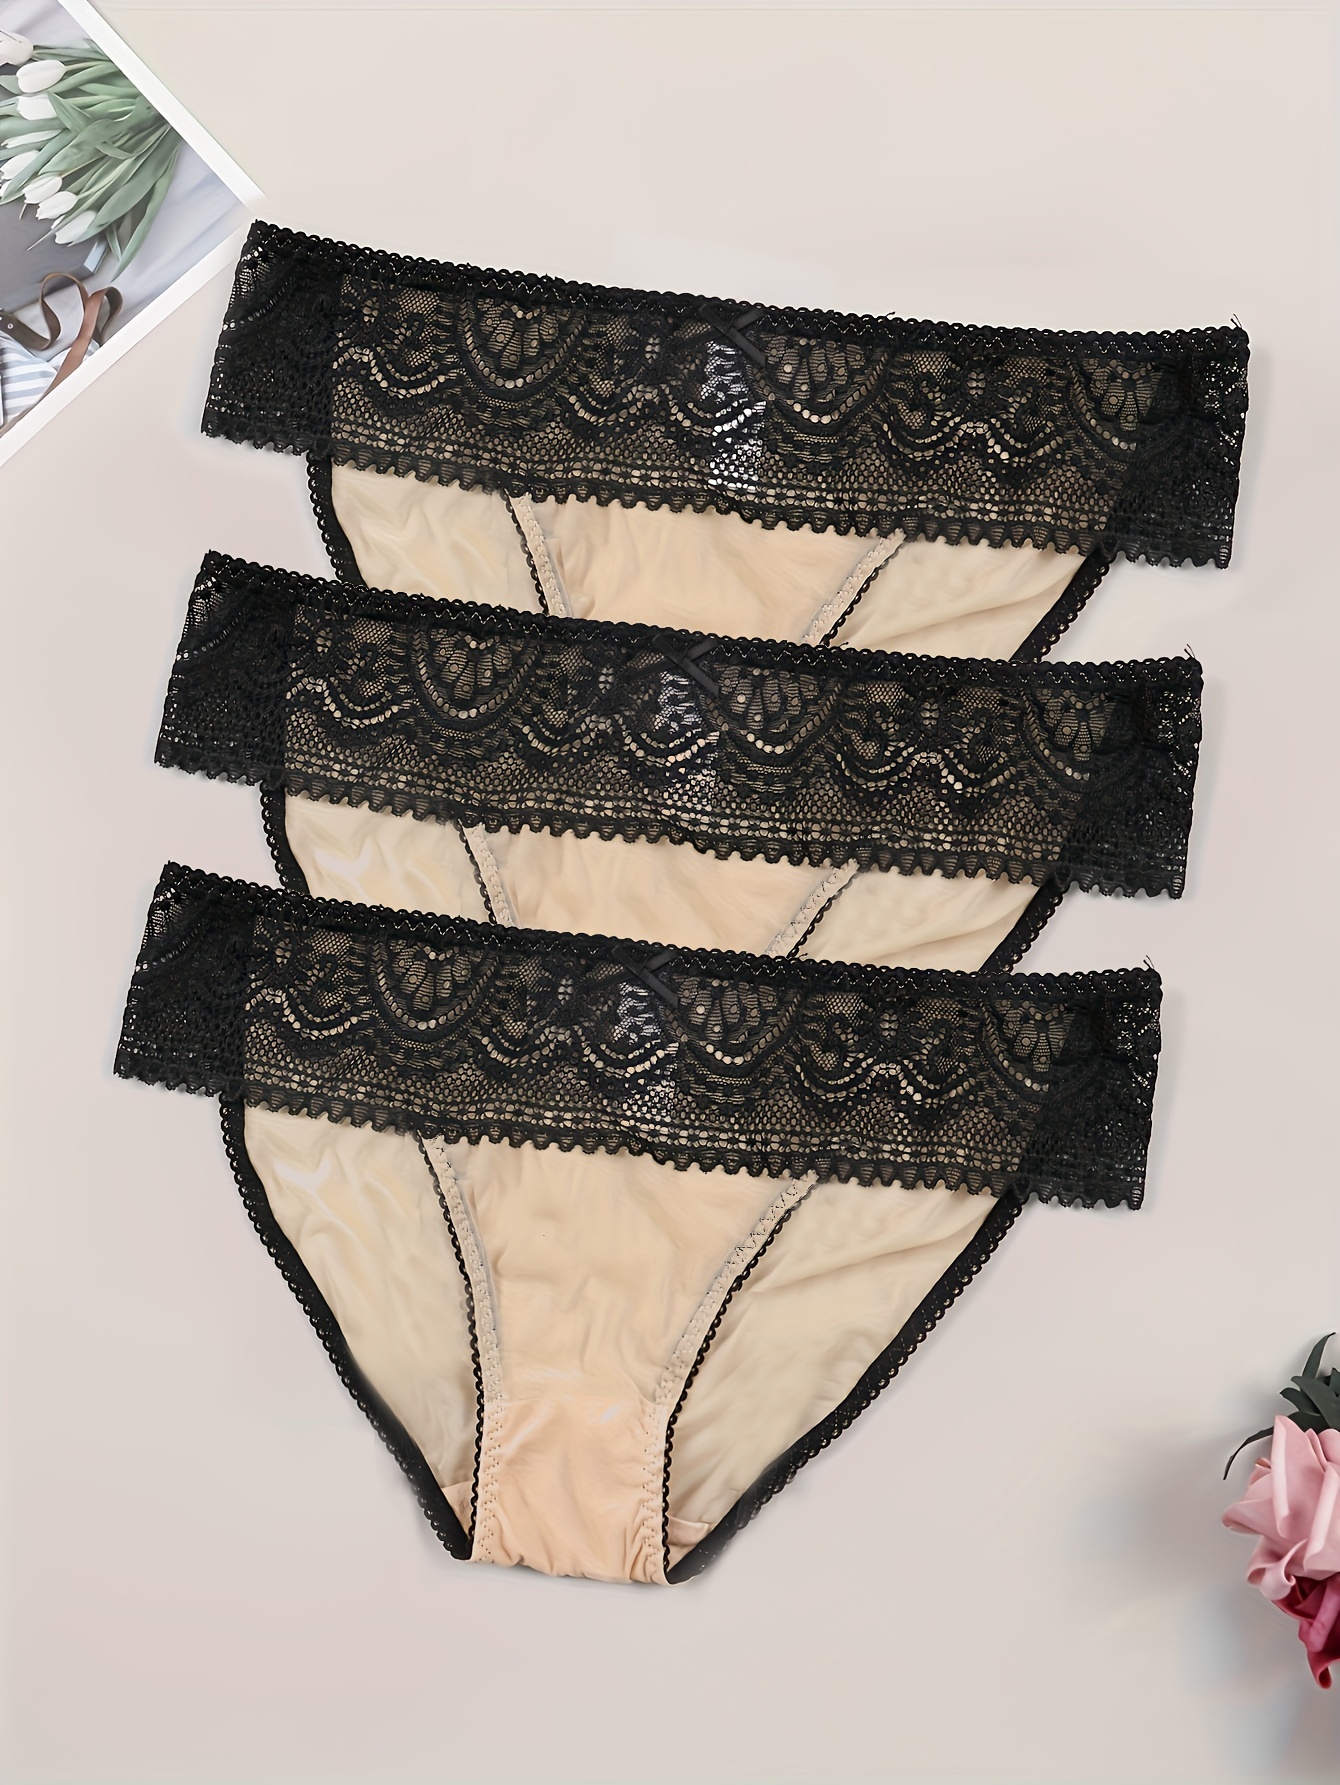 ESSSUT Underwear Womens Women Sexy Lace Bowknot Underwear Lingerie